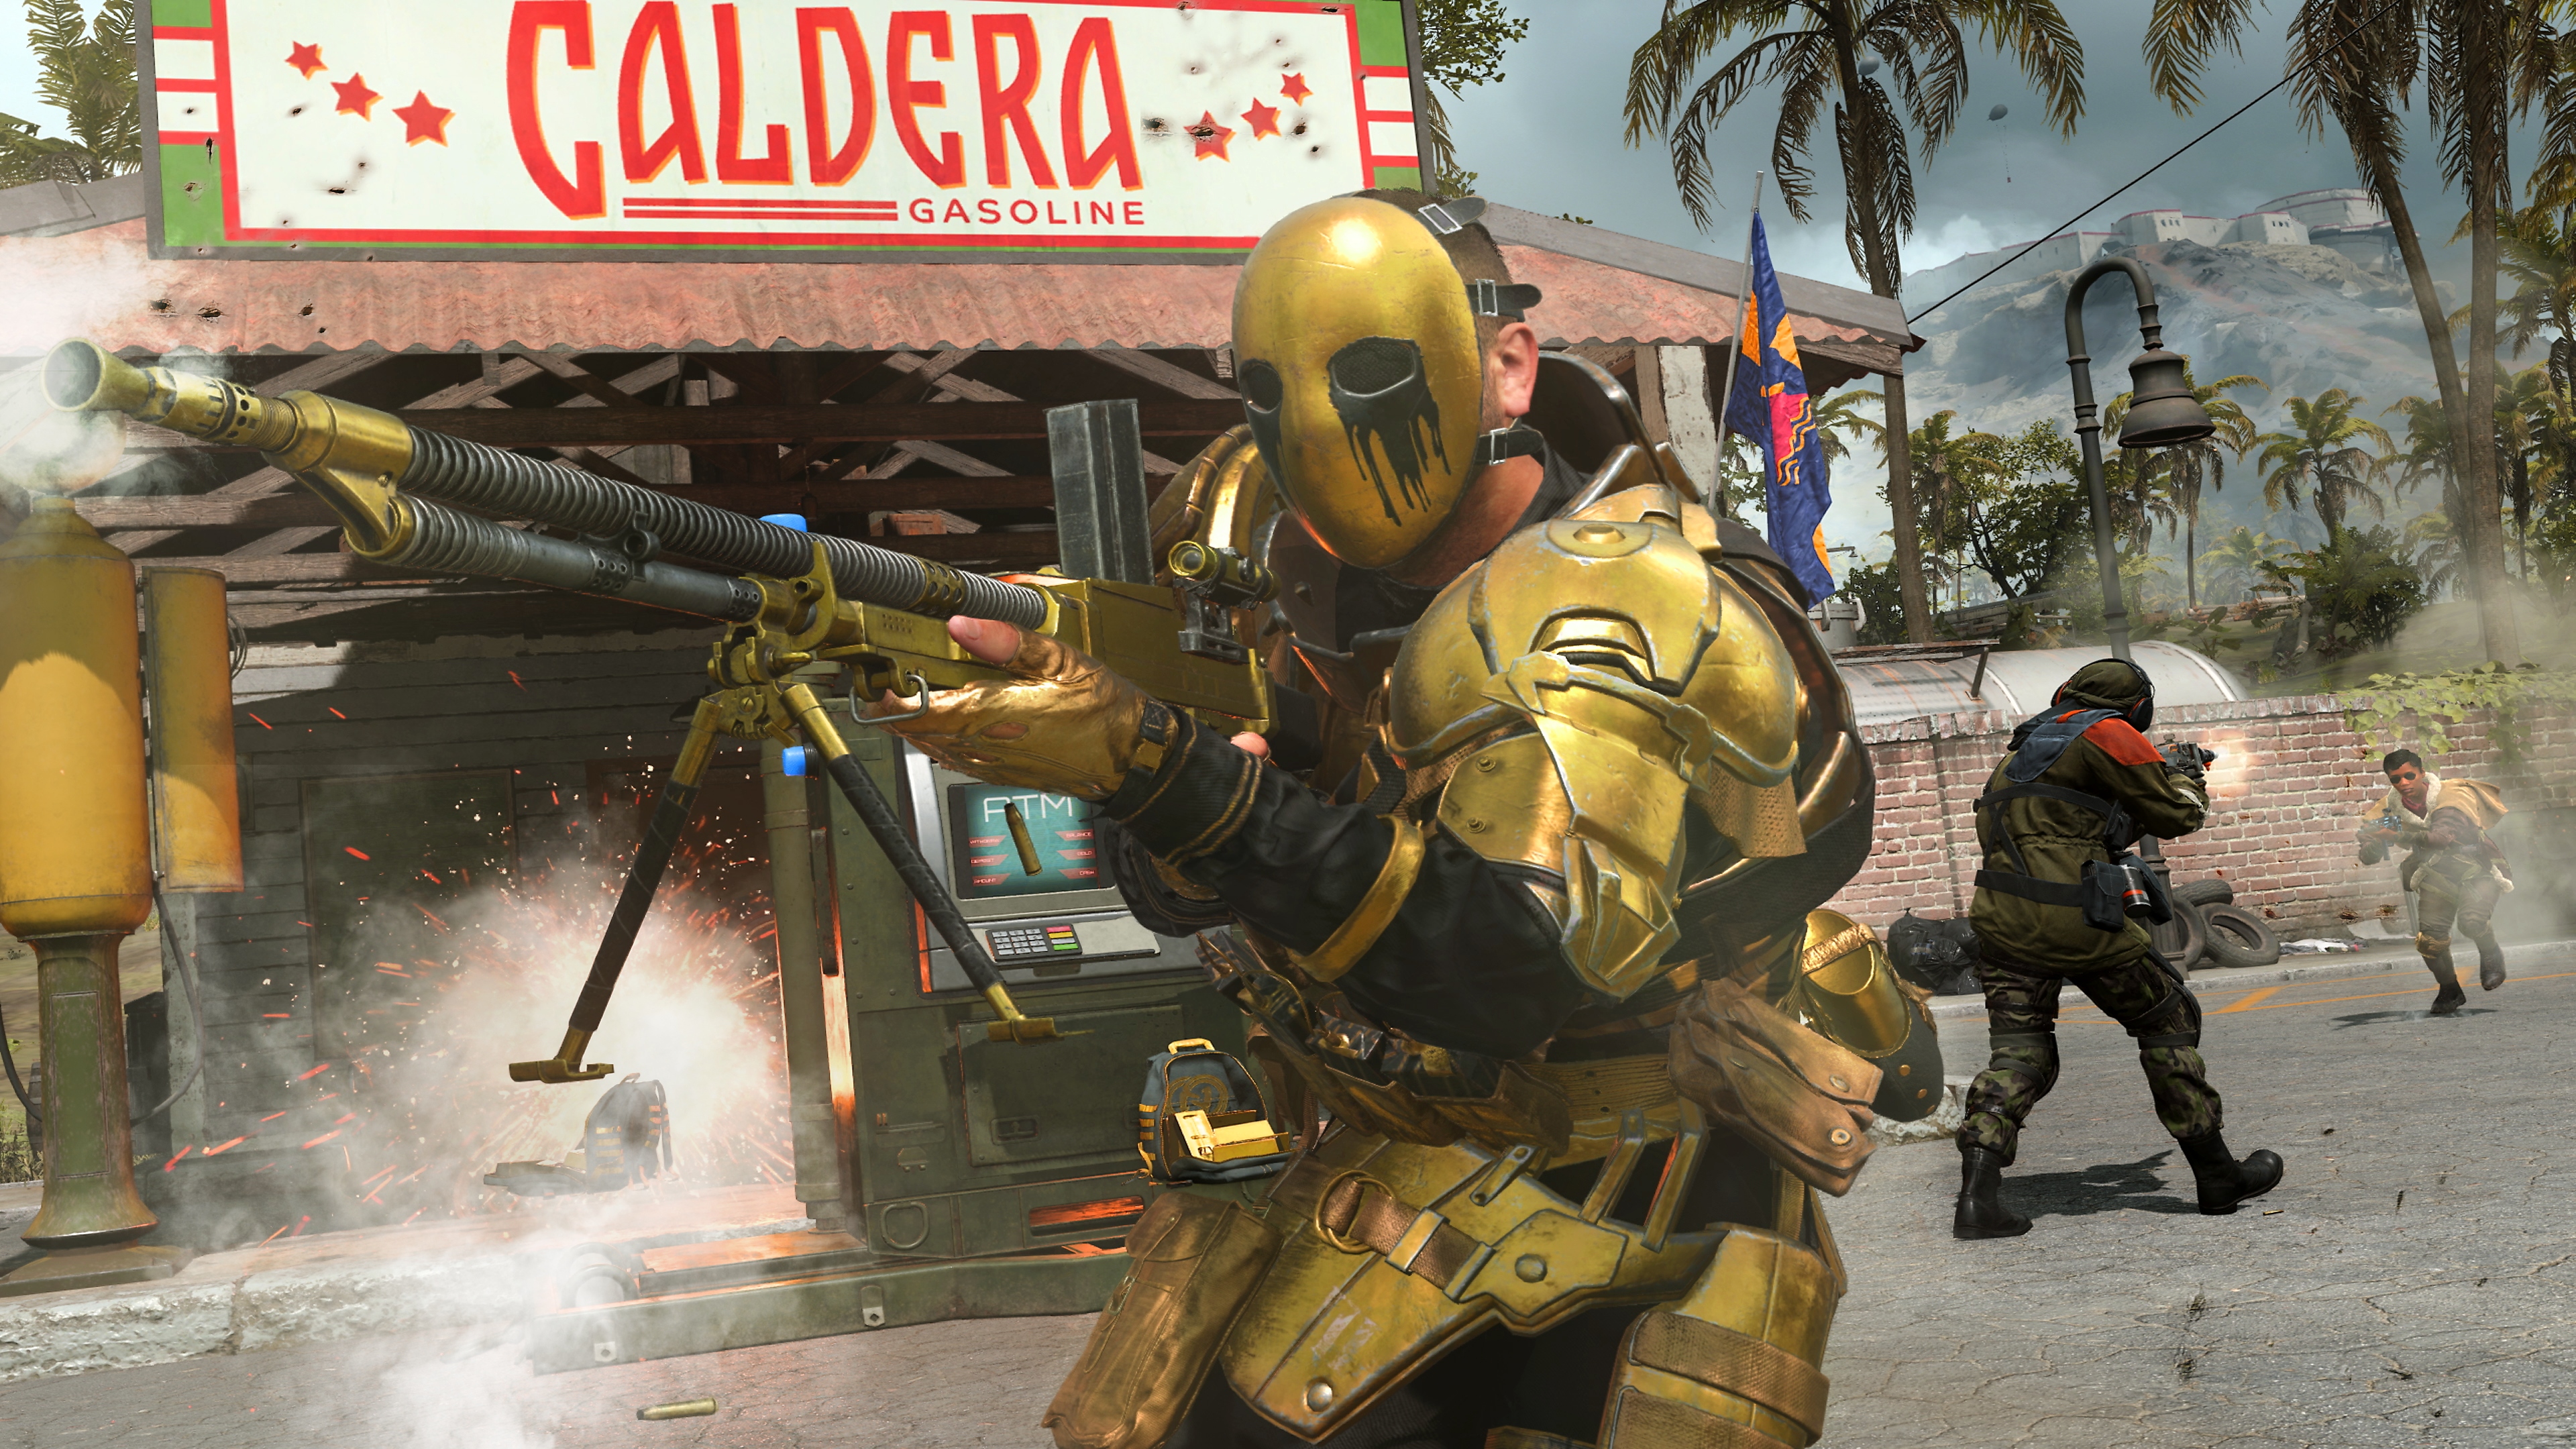 Pruebas de titanio: Captura de pantalla del modo Resistencia de Call of Duty Warzone